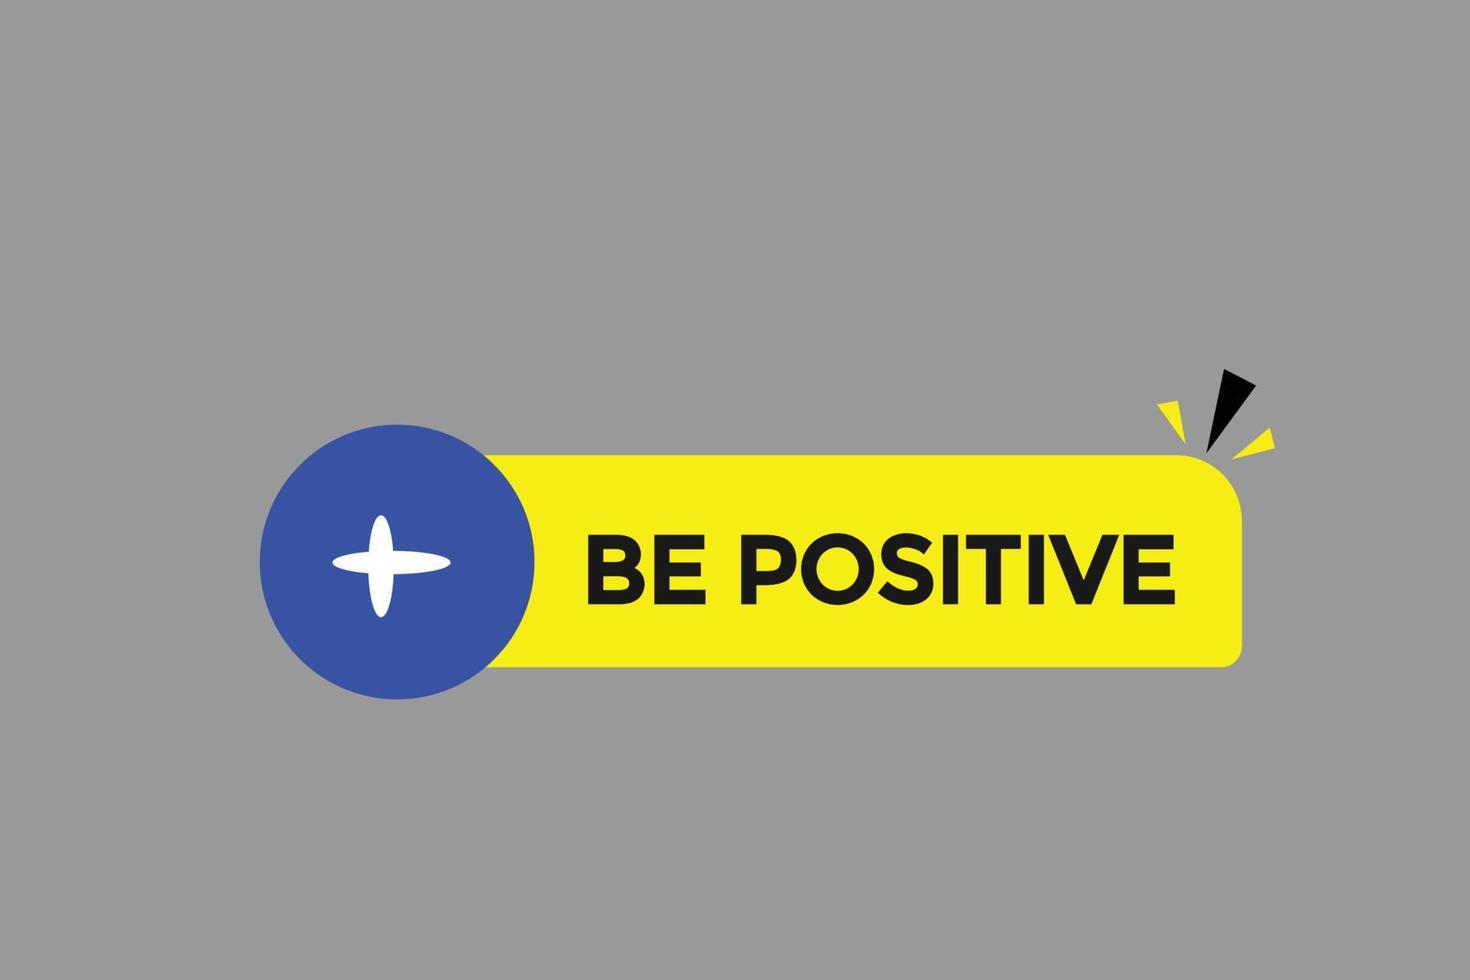 be positive button vectors.sign label speech bubble be positive vector